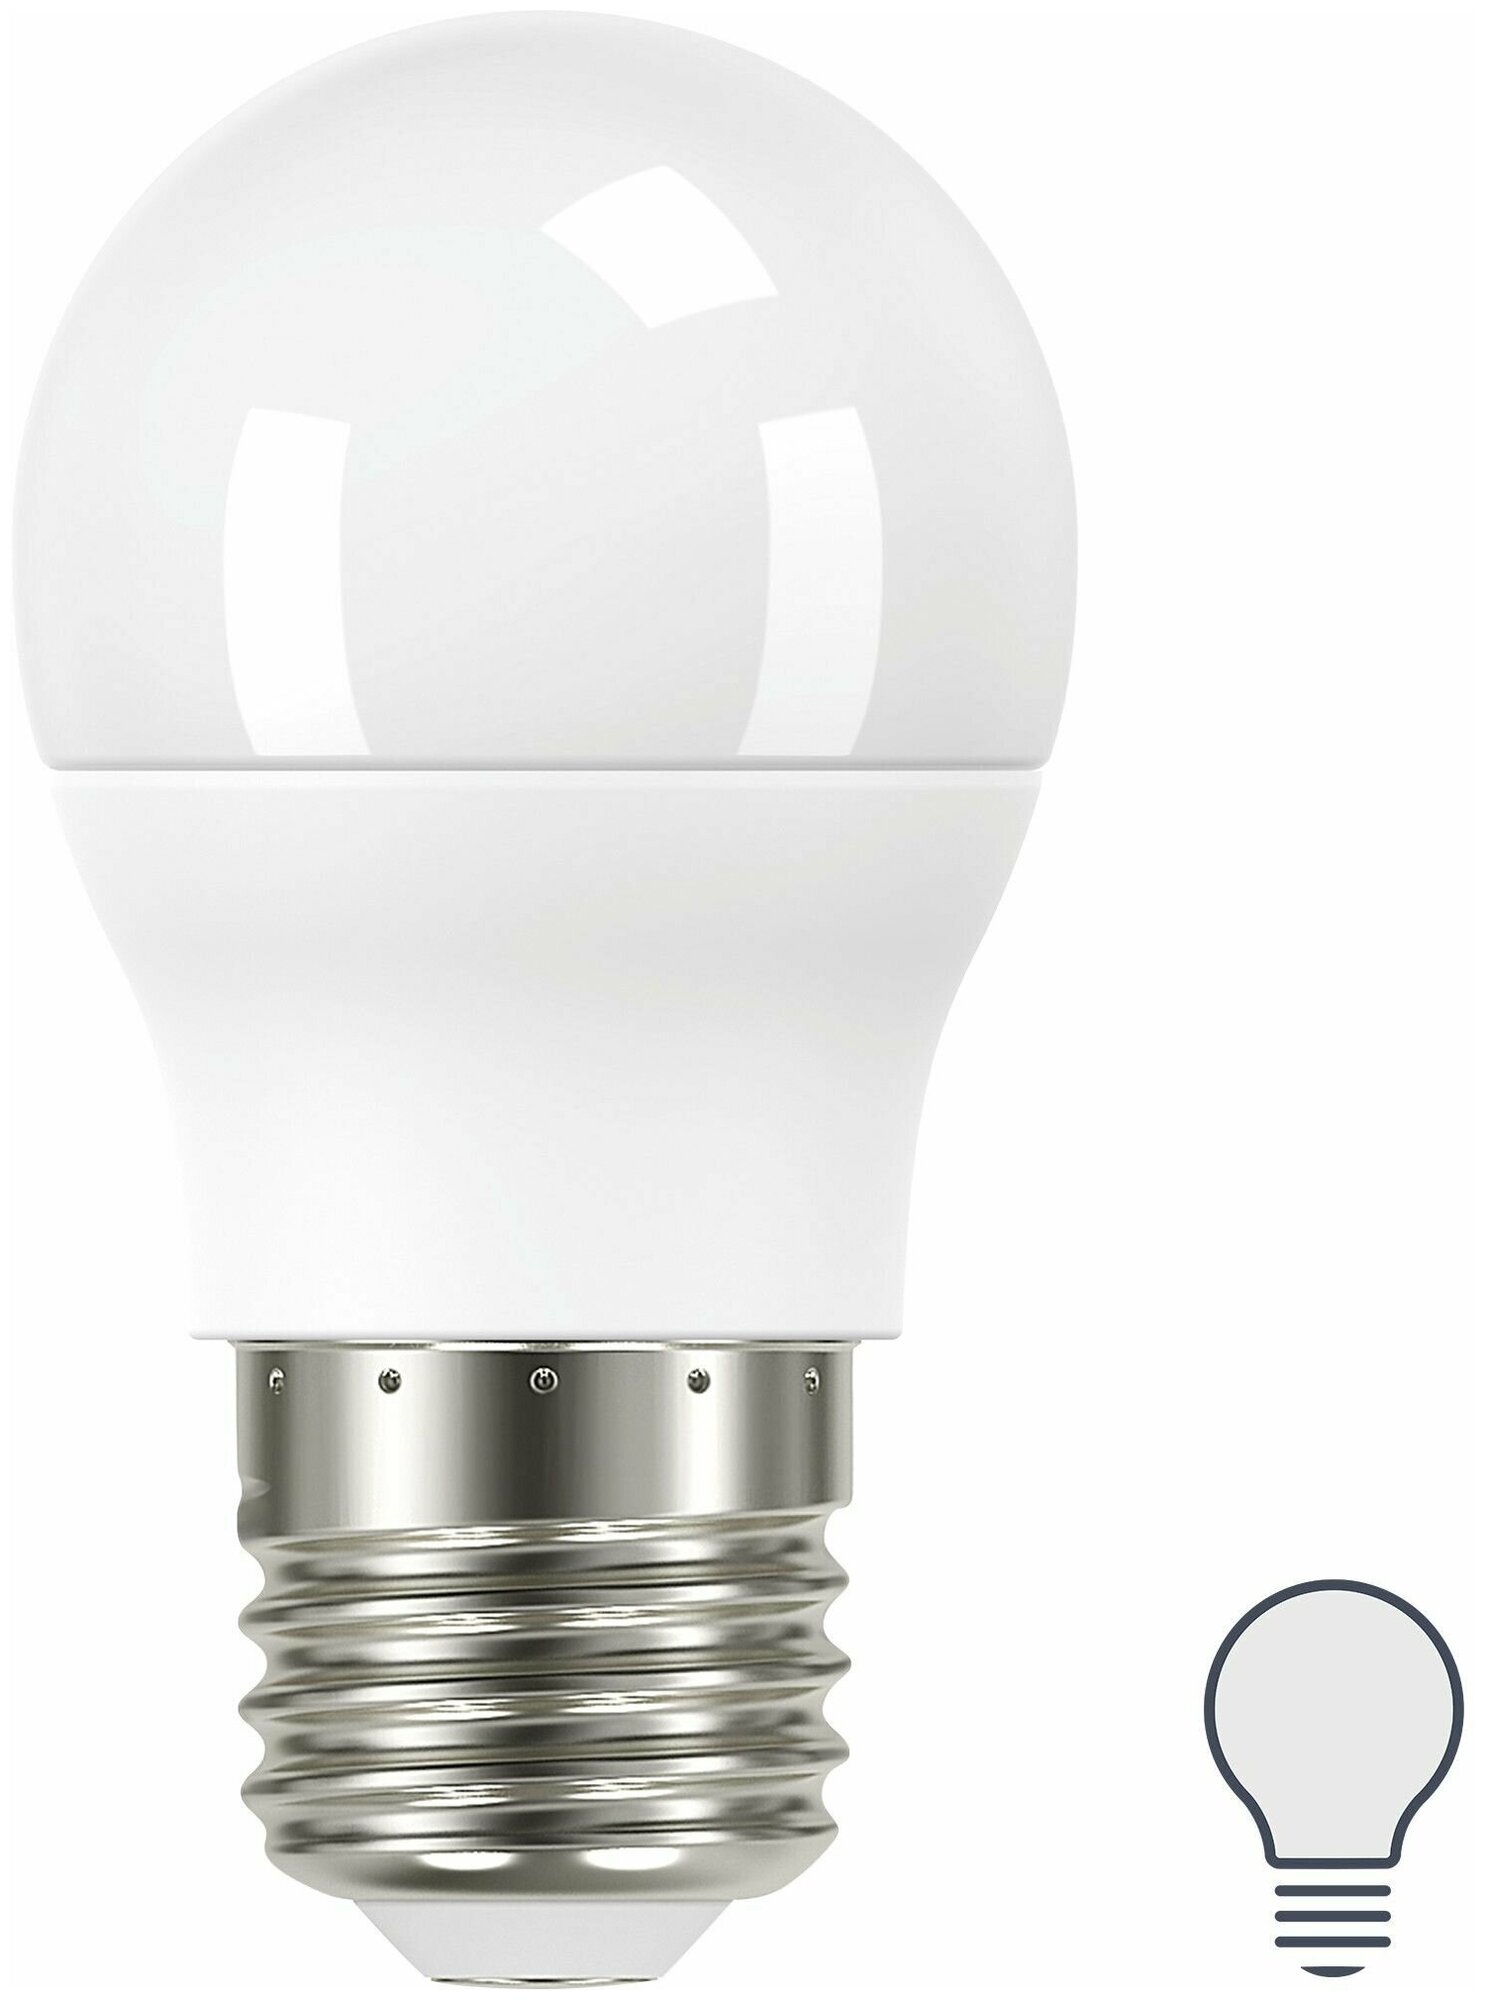 Лампа светодиодная Lexman P45 E27 175-250 В 5.5 Вт матовая 440 лм нейтральный белый свет